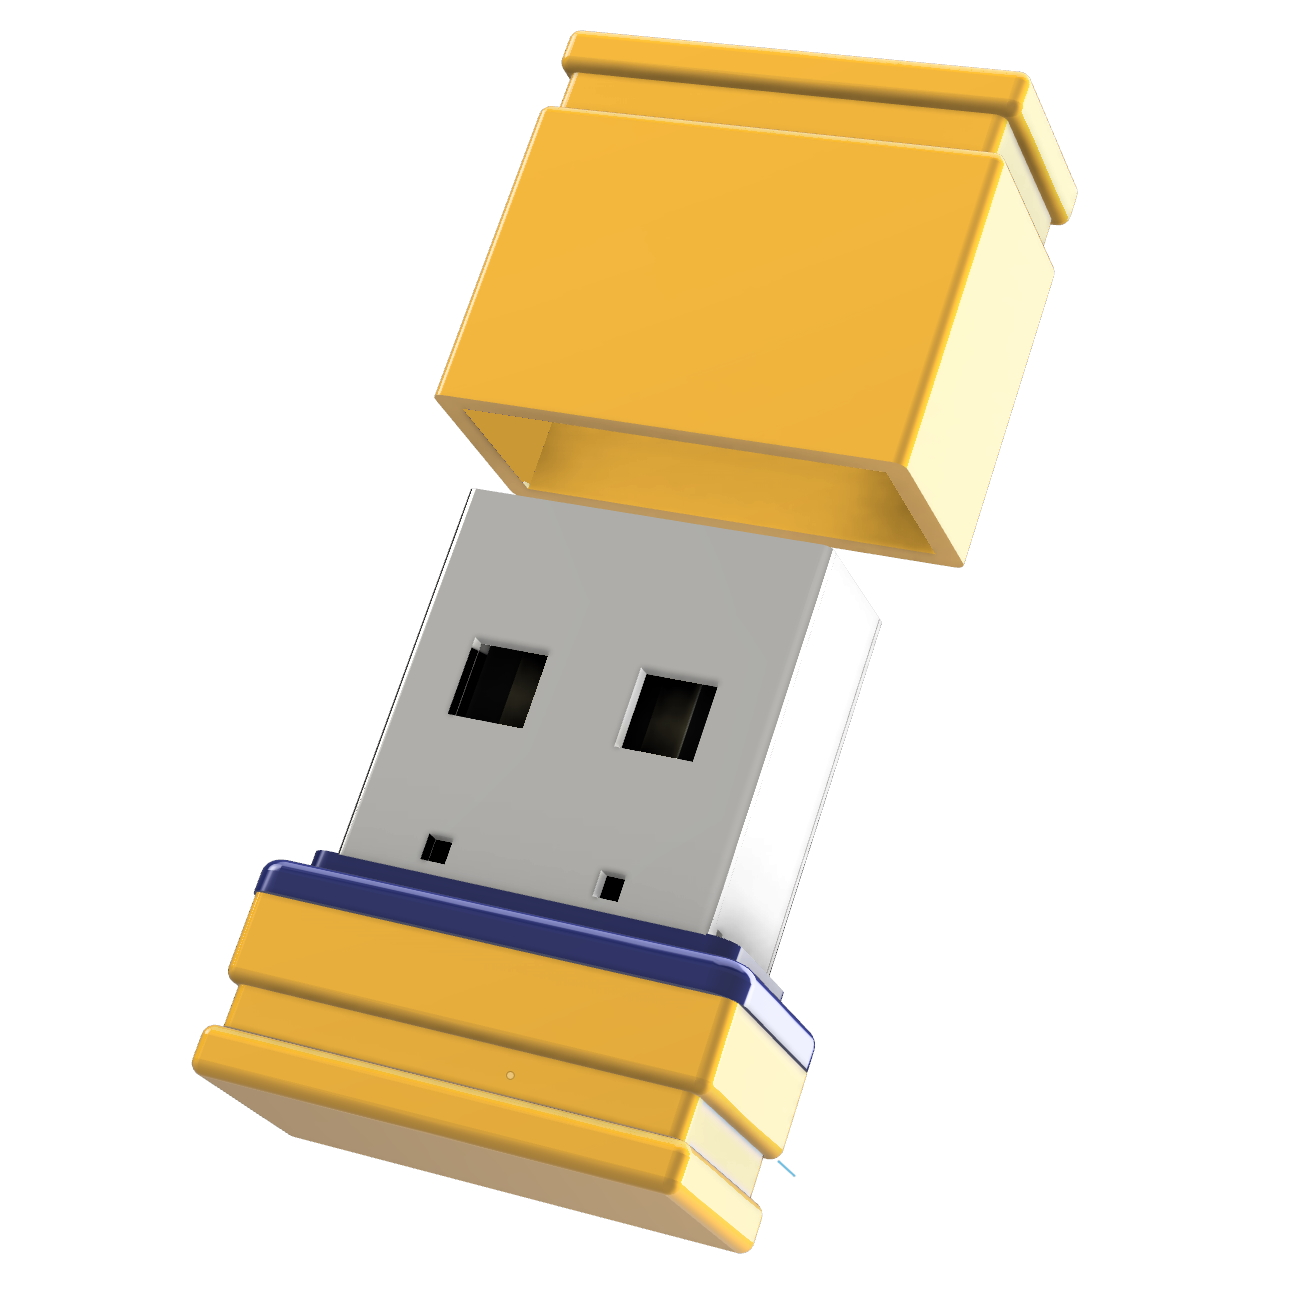 USB GERMANY 2 (Gelb/Blau, ®ULTRA GB) P1 Mini USB-Stick